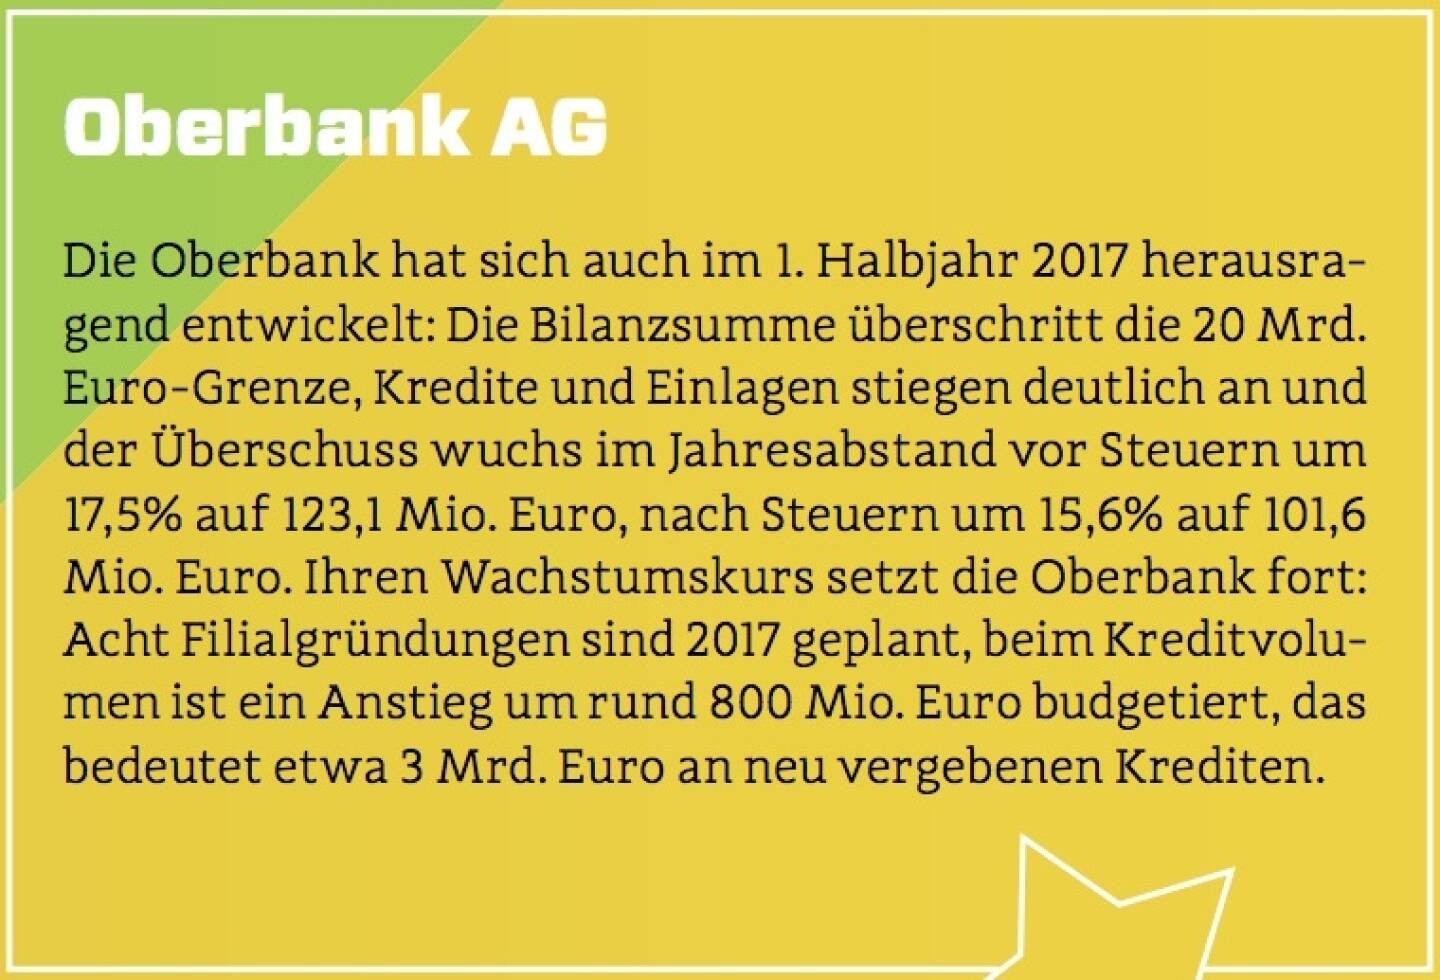 Oberbank AG - Die Oberbank hat sich auch im 1. Halbjahr 2017 herausragend entwickelt: Die Bilanzsumme überschritt die 20 Mrd. Euro-Grenze, Kredite und Einlagen stiegen deutlich an und der Überschuss wuchs im Jahresabstand vor Steuern um 17,5% auf 123,1 Mio. Euro, nach Steuern um 15,6% auf 101,6 Mio. Euro. Ihren Wachstumskurs setzt die Oberbank fort: Acht Filialgründungen sind 2017 geplant, beim Kreditvolumen ist ein Anstieg um rund 800 Mio. Euro budgetiert, das bedeutet etwa 3 Mrd. Euro an neu vergebenen Krediten.